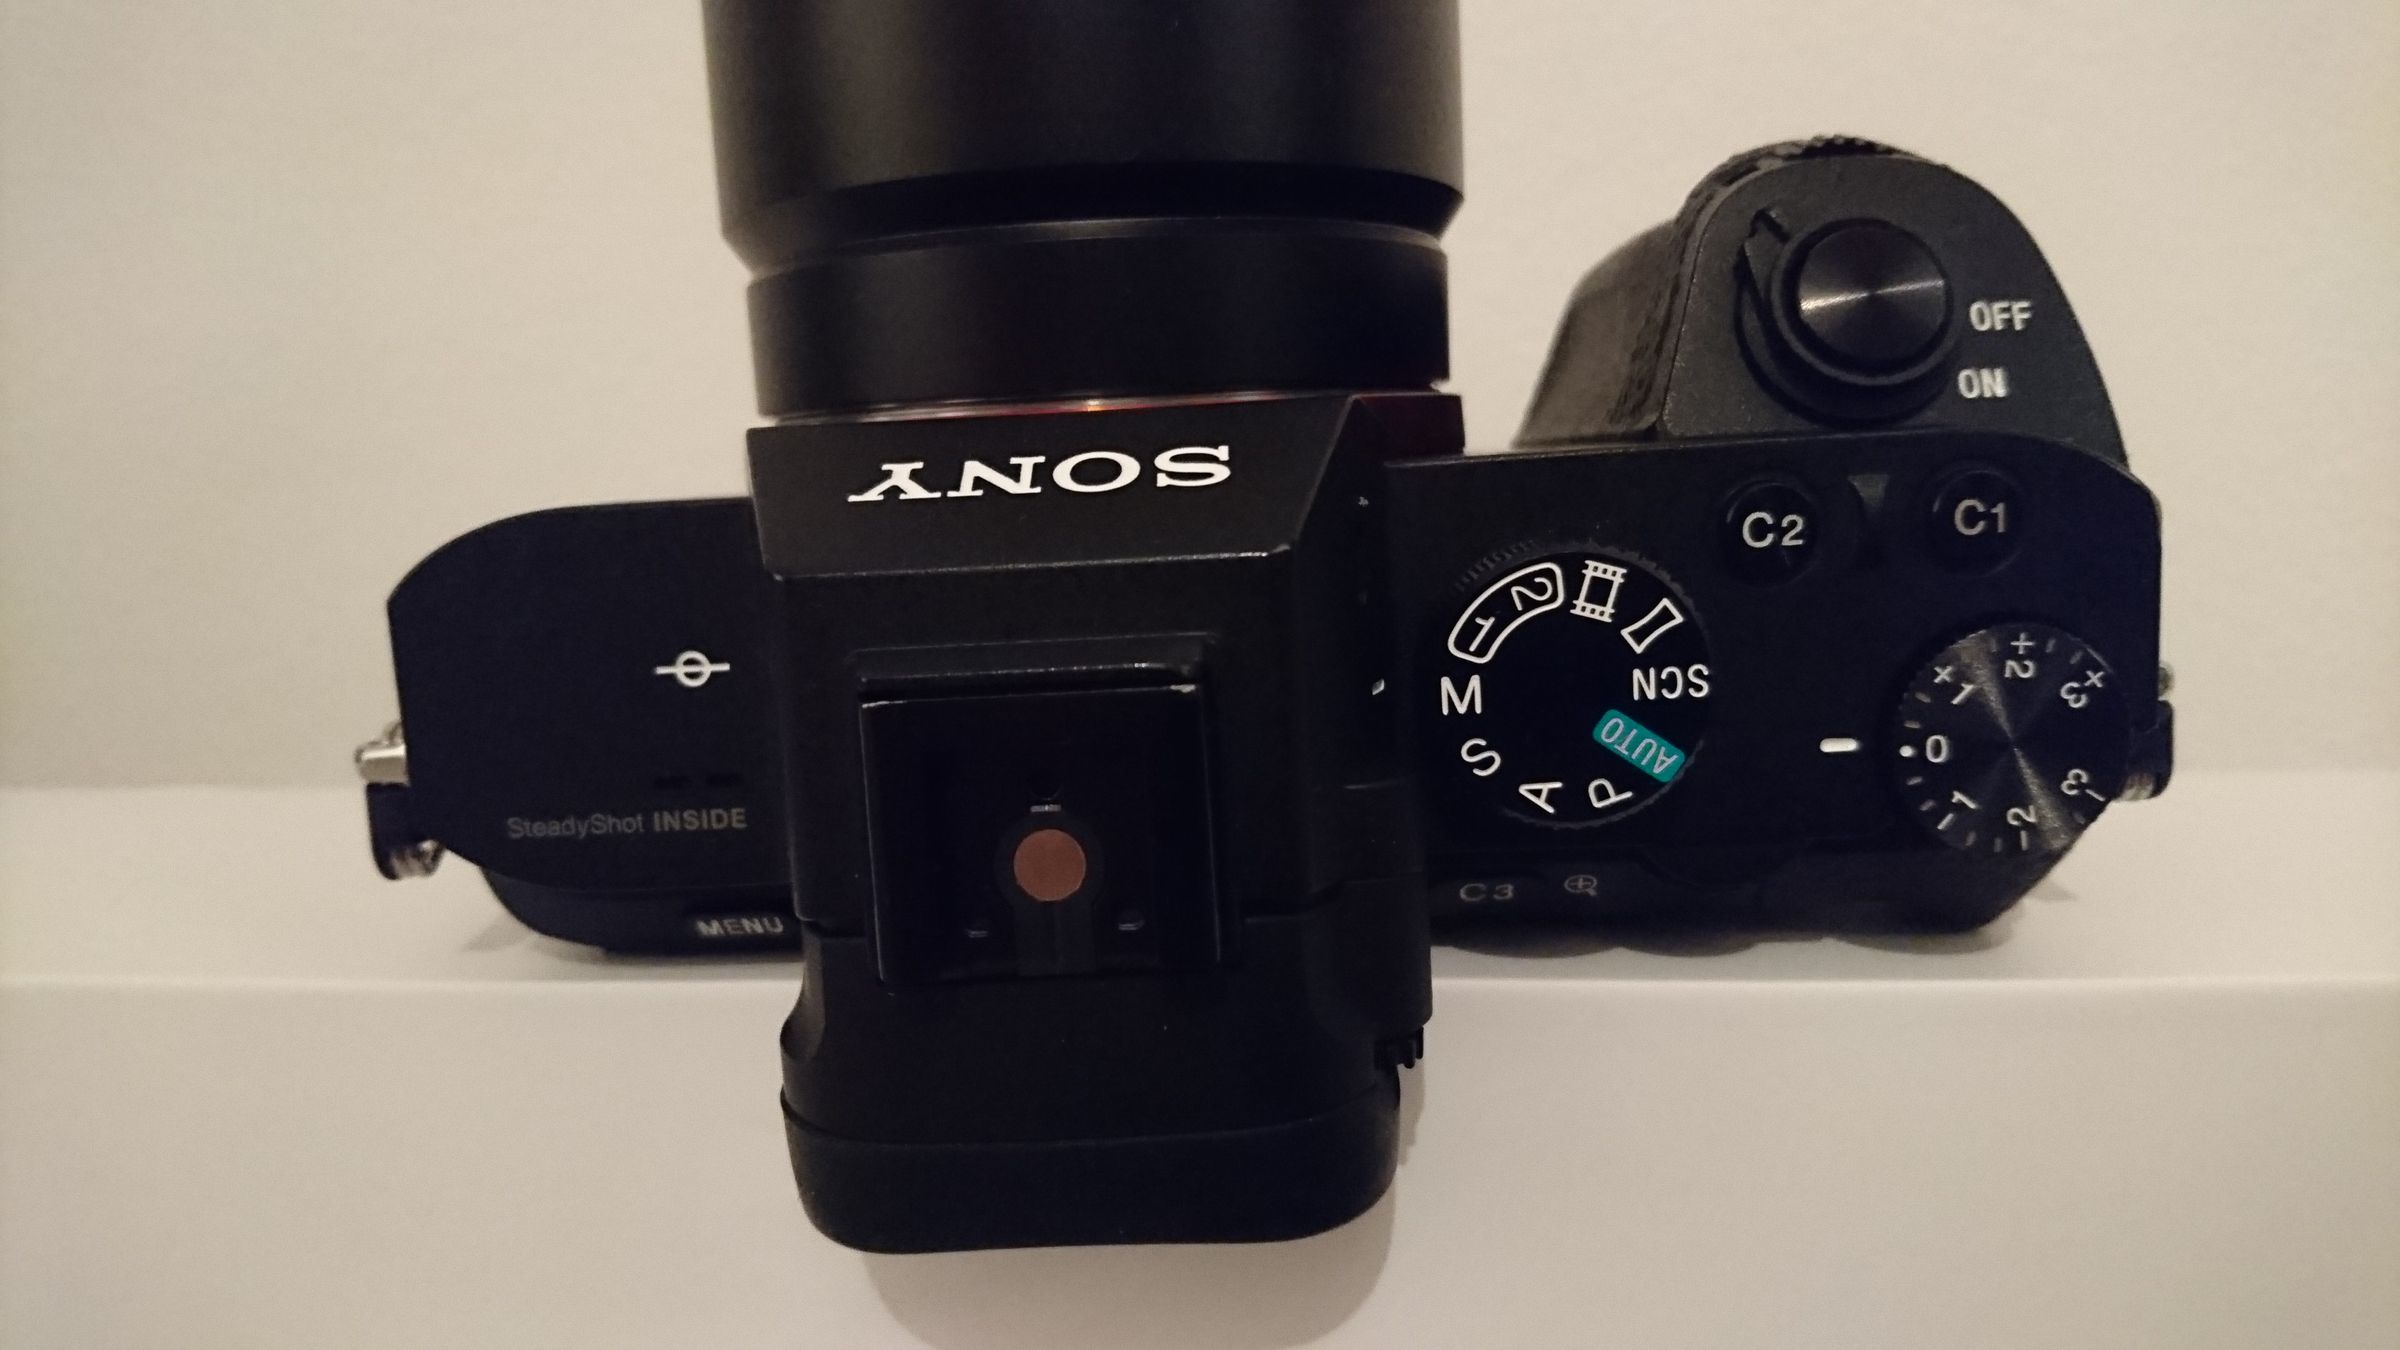 Sony Xperia Z5 Compact camera sample photos